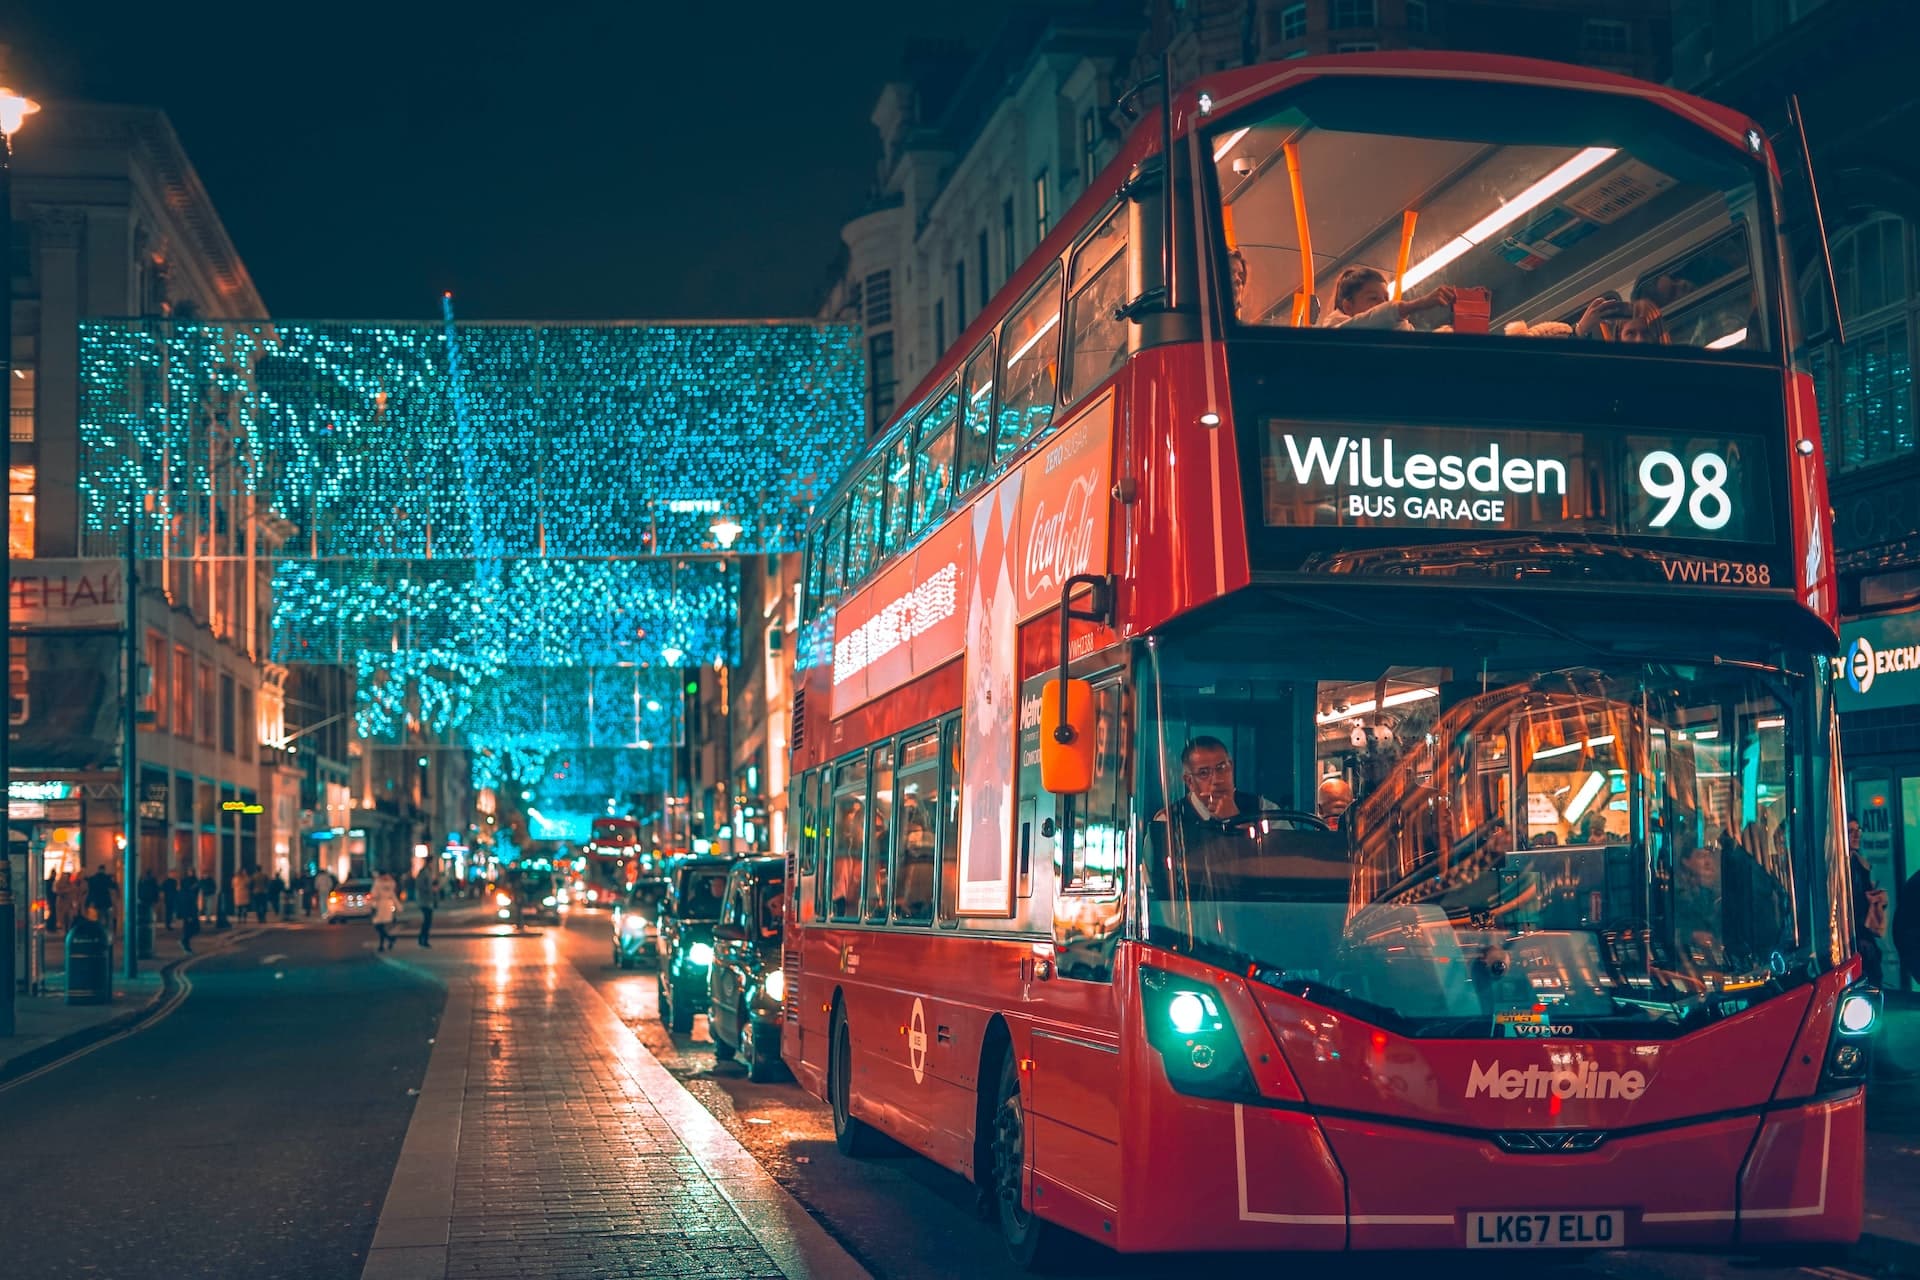 Londres à Noël